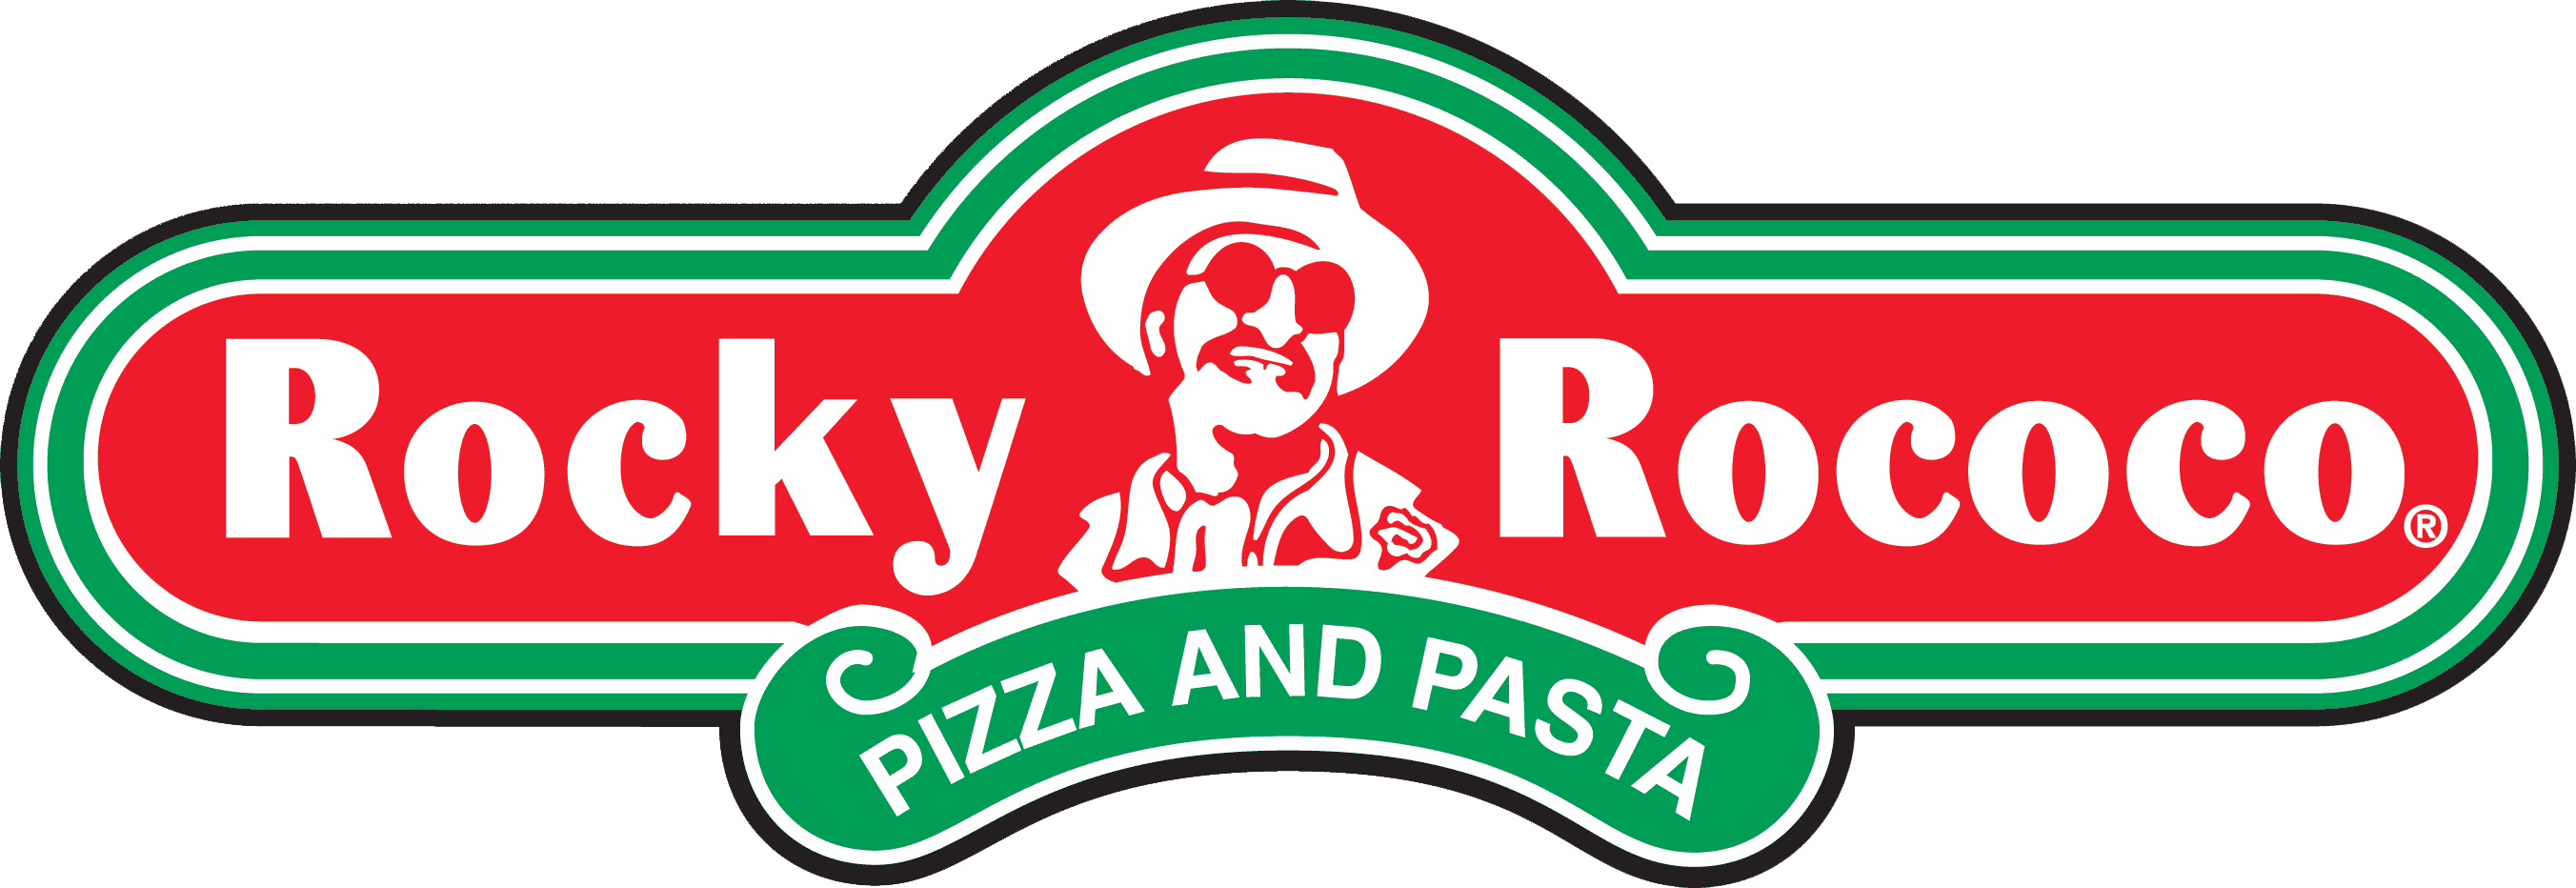 Rocky Rococo Pizza & Pasta (Airport) Logo